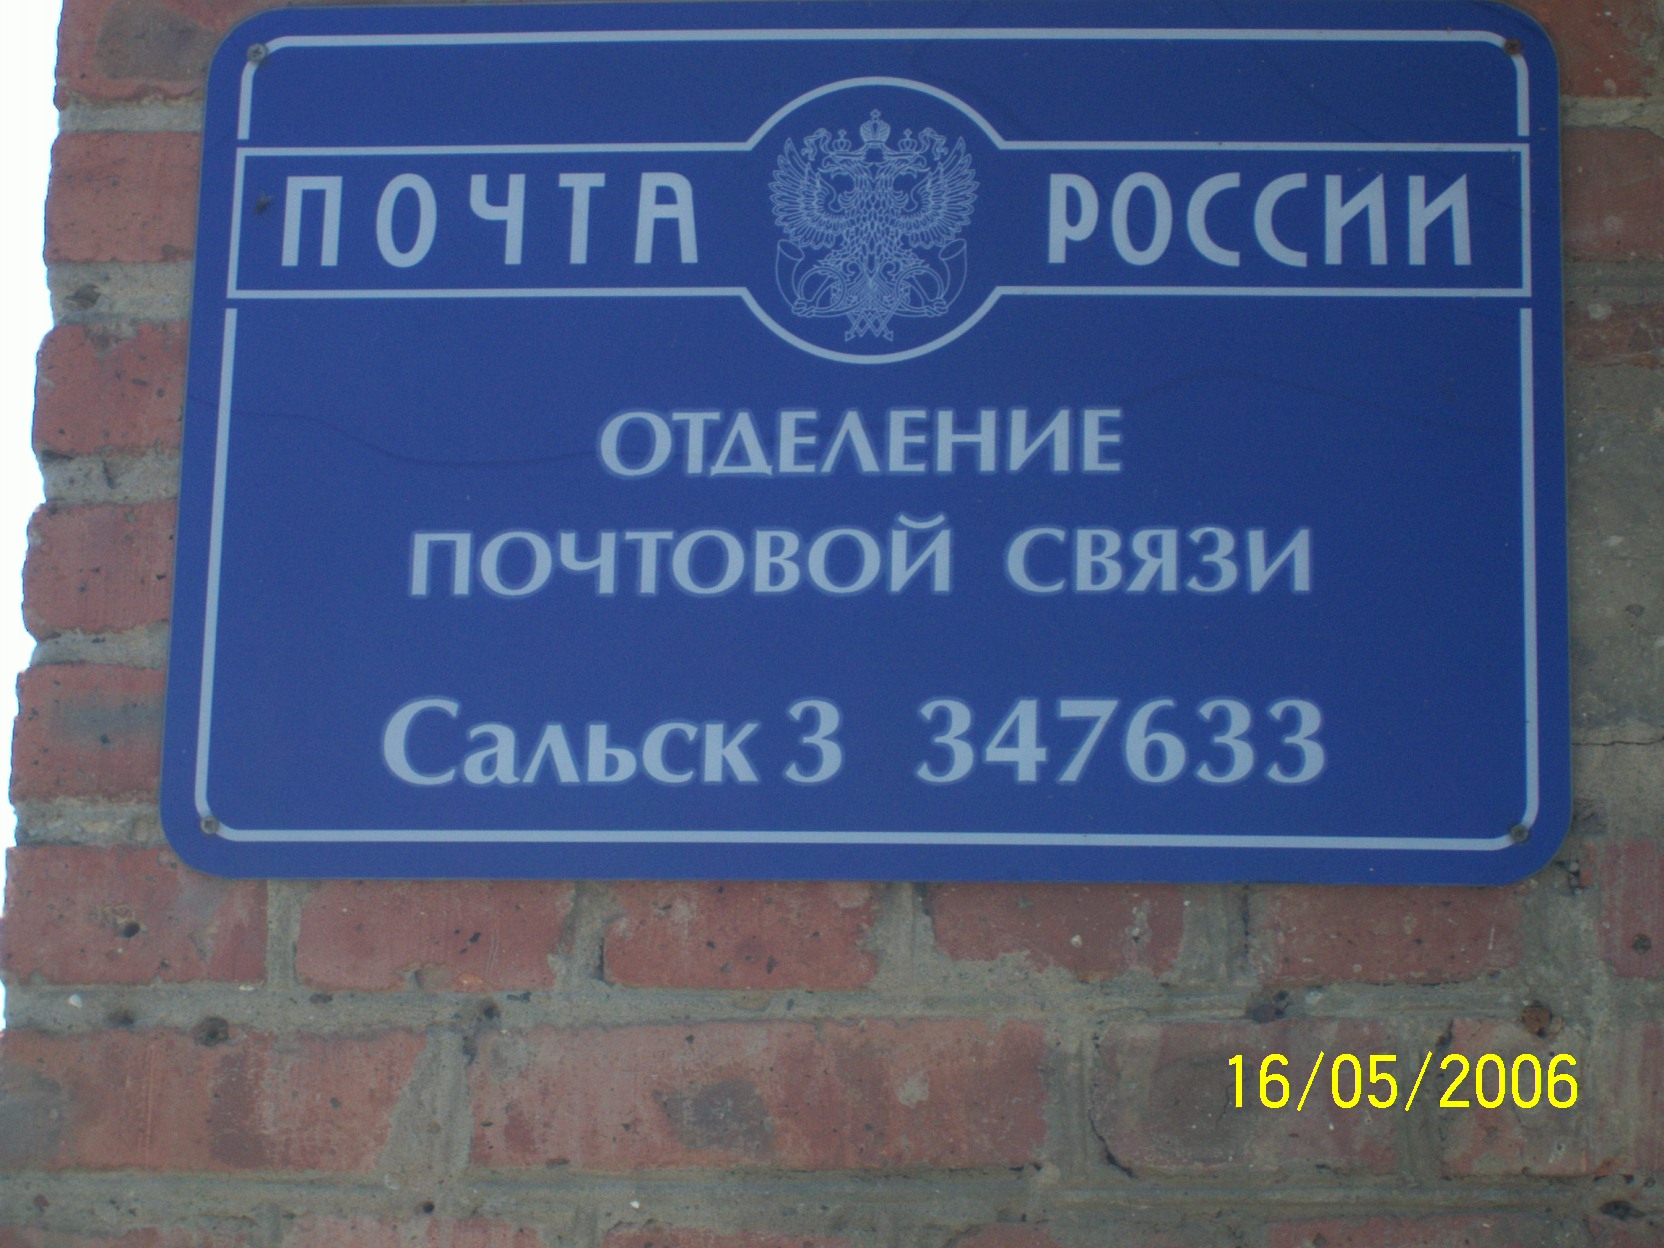 ВХОД, отделение почтовой связи 347633, Ростовская обл., Сальск